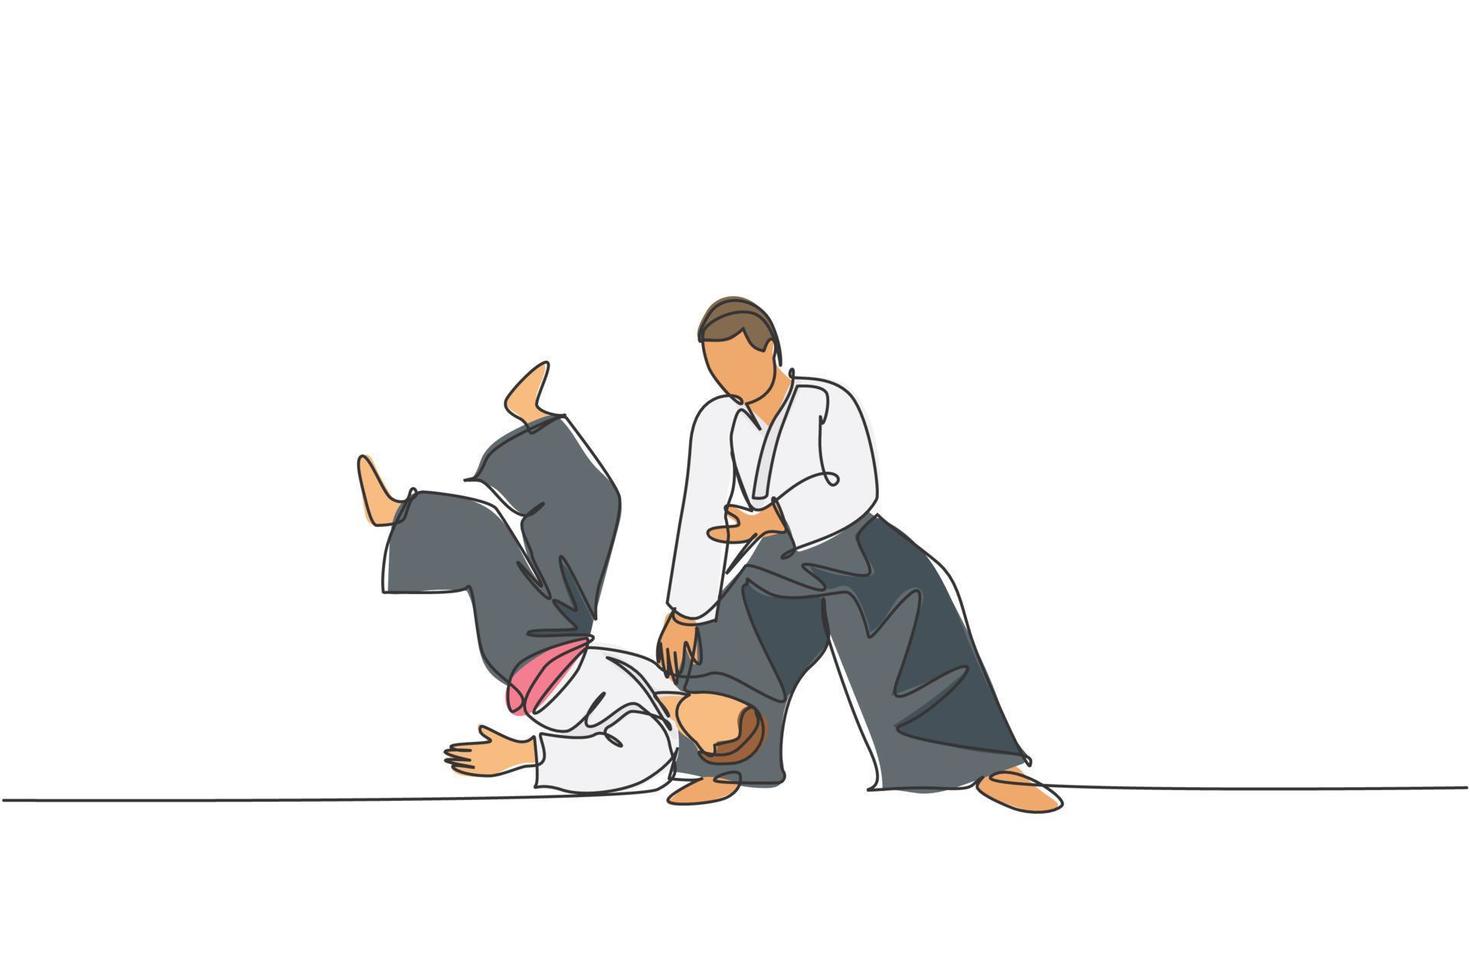 desenho de linha única contínua de dois jovens esportistas vestindo quimonos, praticando a técnica de luta de aikido. conceito de arte marcial japonesa. ilustração em vetor desenho desenho de uma linha na moda